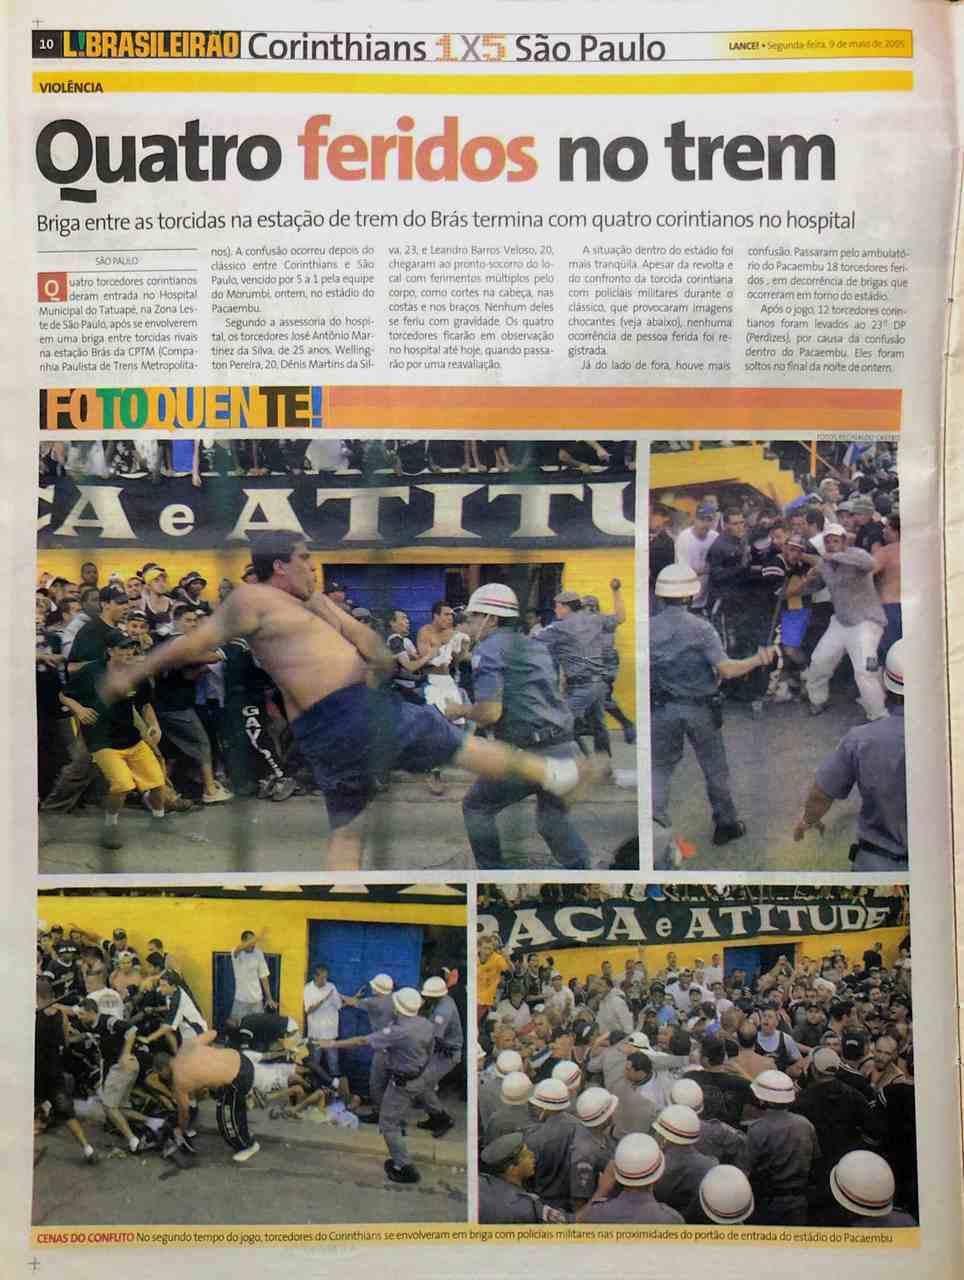 O jogo também ficou marcado por cenas de violência. Torcedores do Corinthians entraram em confronto com a PM ao tentarem invadir o gramado (12 foram presos). Também houve briga entre as duas torcidas na CPTM.